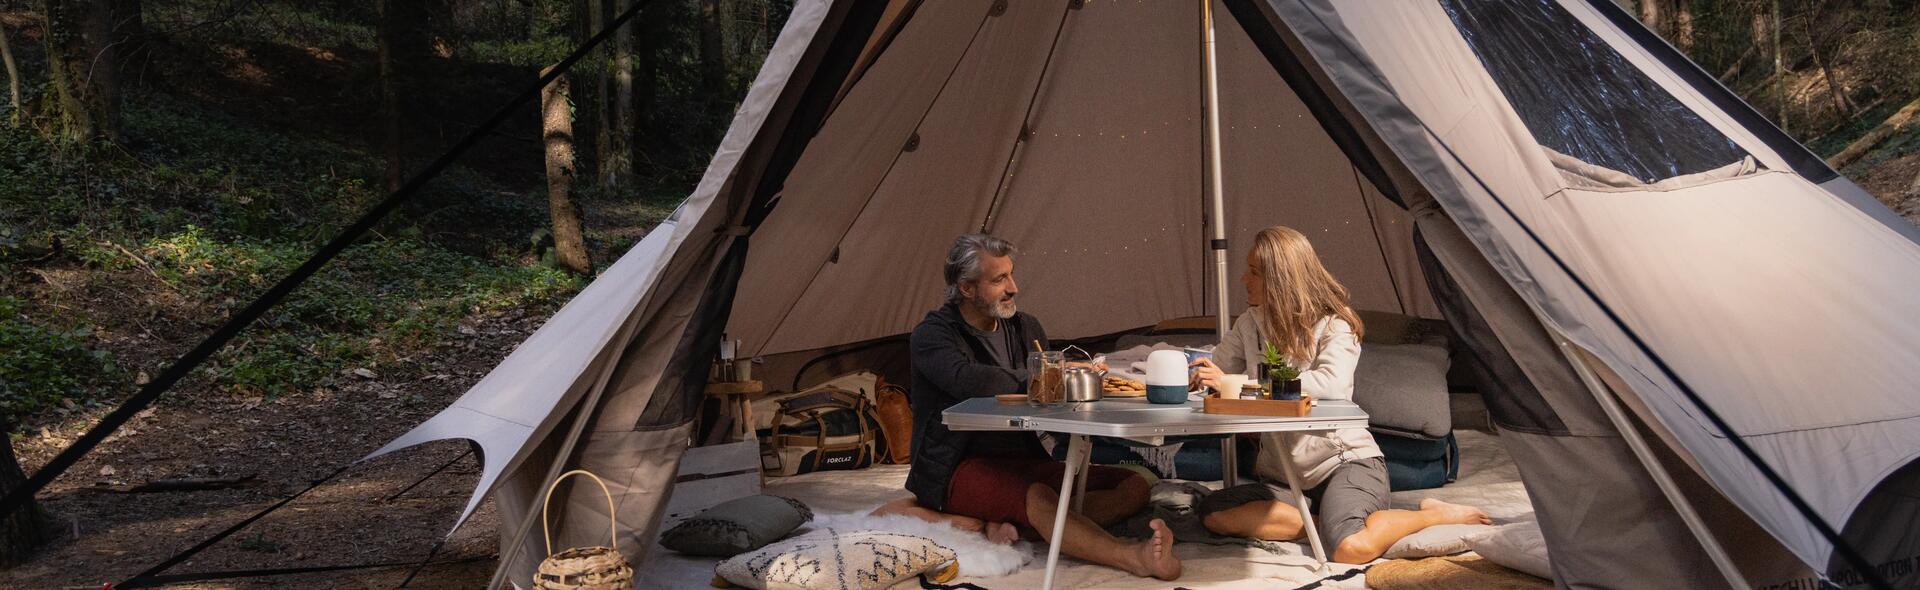 kobieta i mężczyzna siedzący przy stoliku turystycznym w namiocie z  jedzeniem